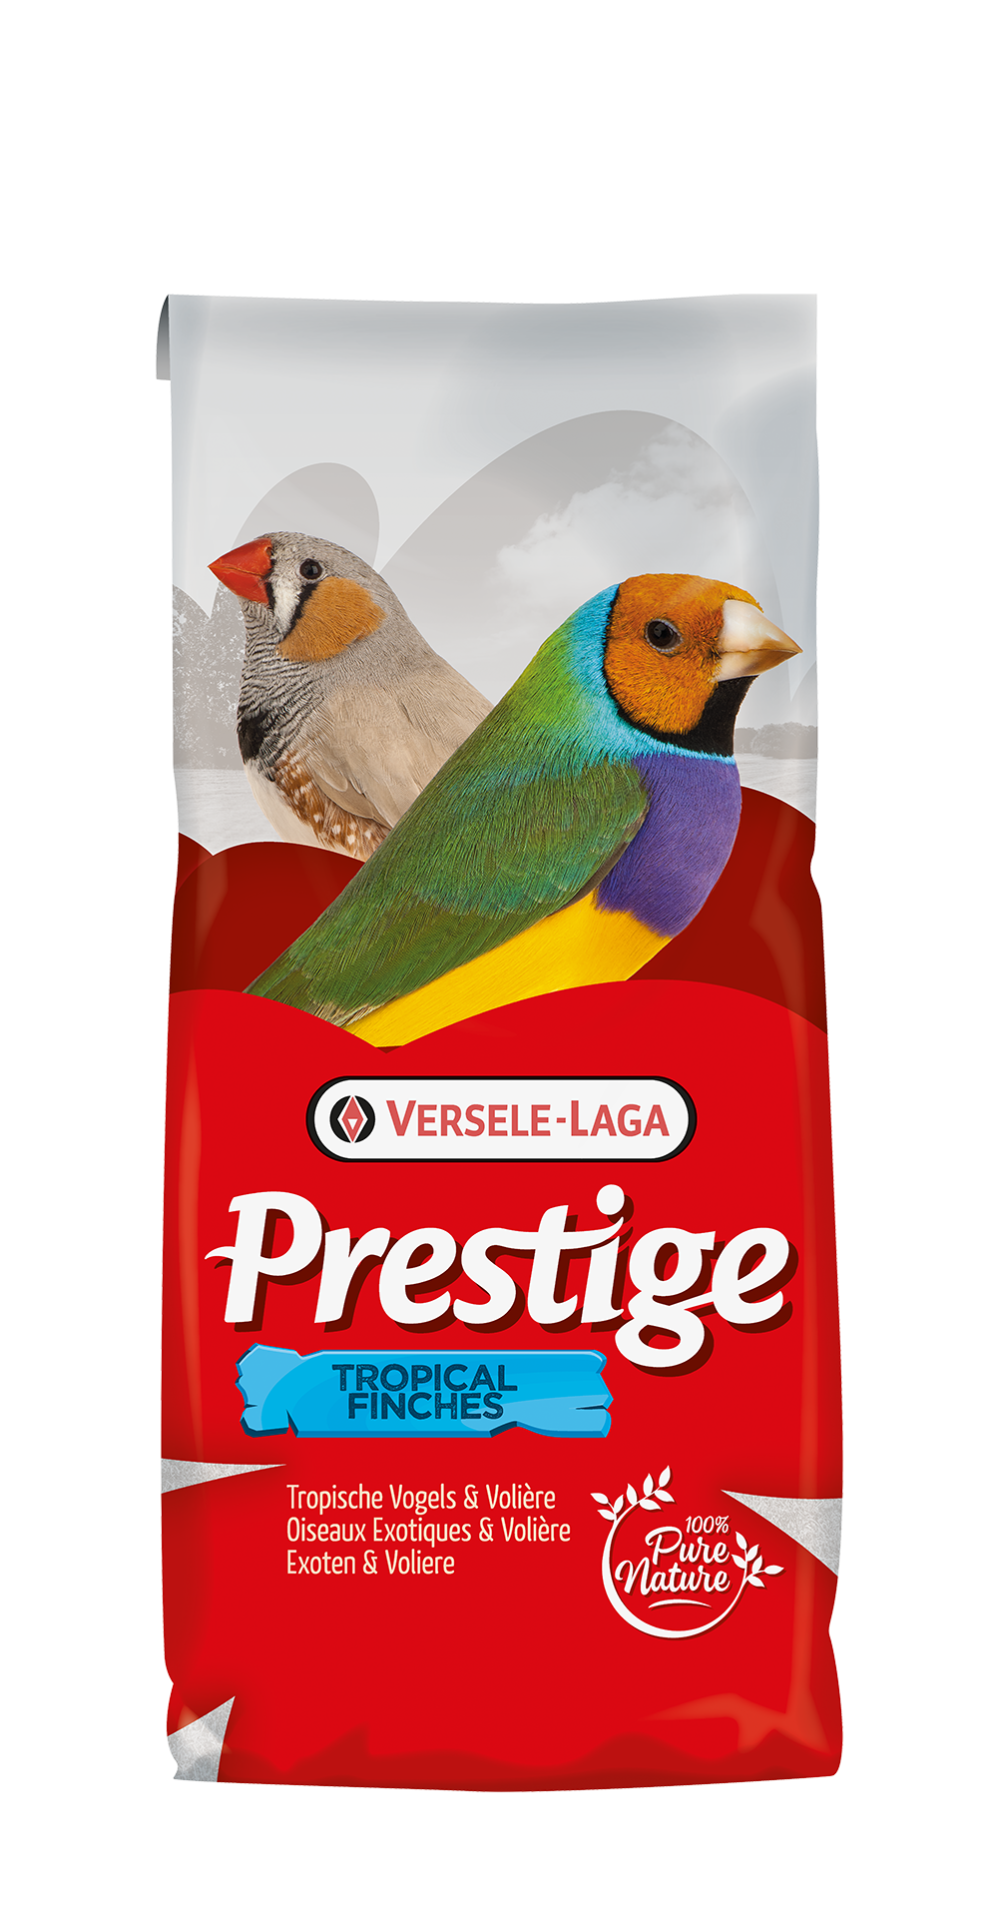 Versele-Laga Prestige Tropische Vogels Cultuurexoten 20 kg